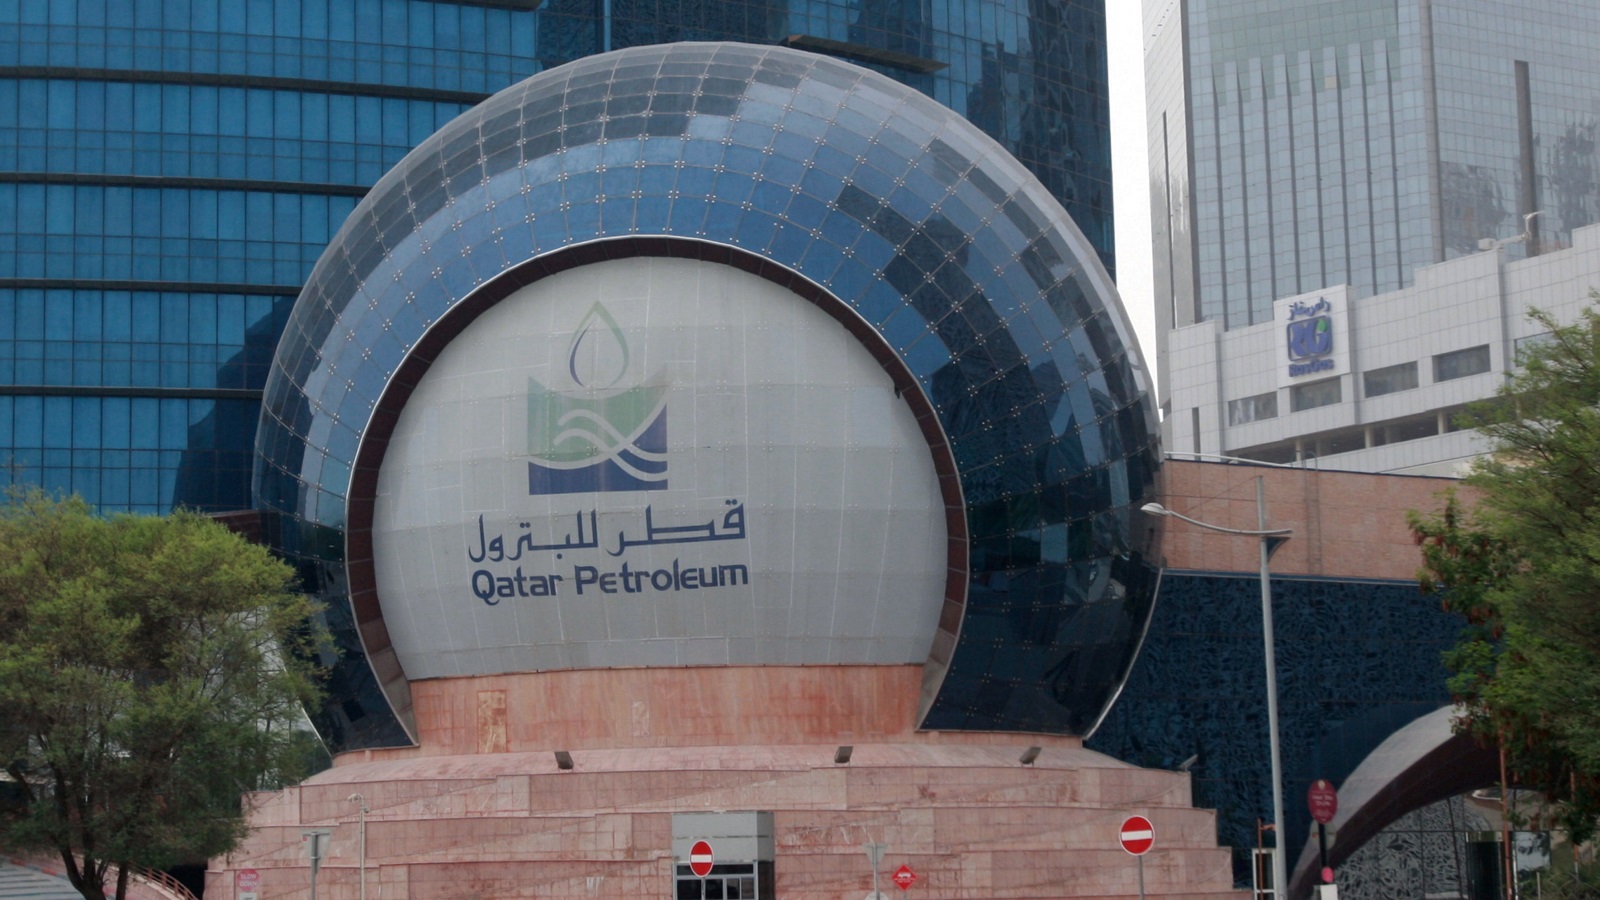                                قطر للبترول تعاقدت سابقا مع شركة شيفرون فيليبس للكيماويات لبناء وتطوير مجمع للبتروكيماويات في مدينة رأس لفان بقطر (رويترز)